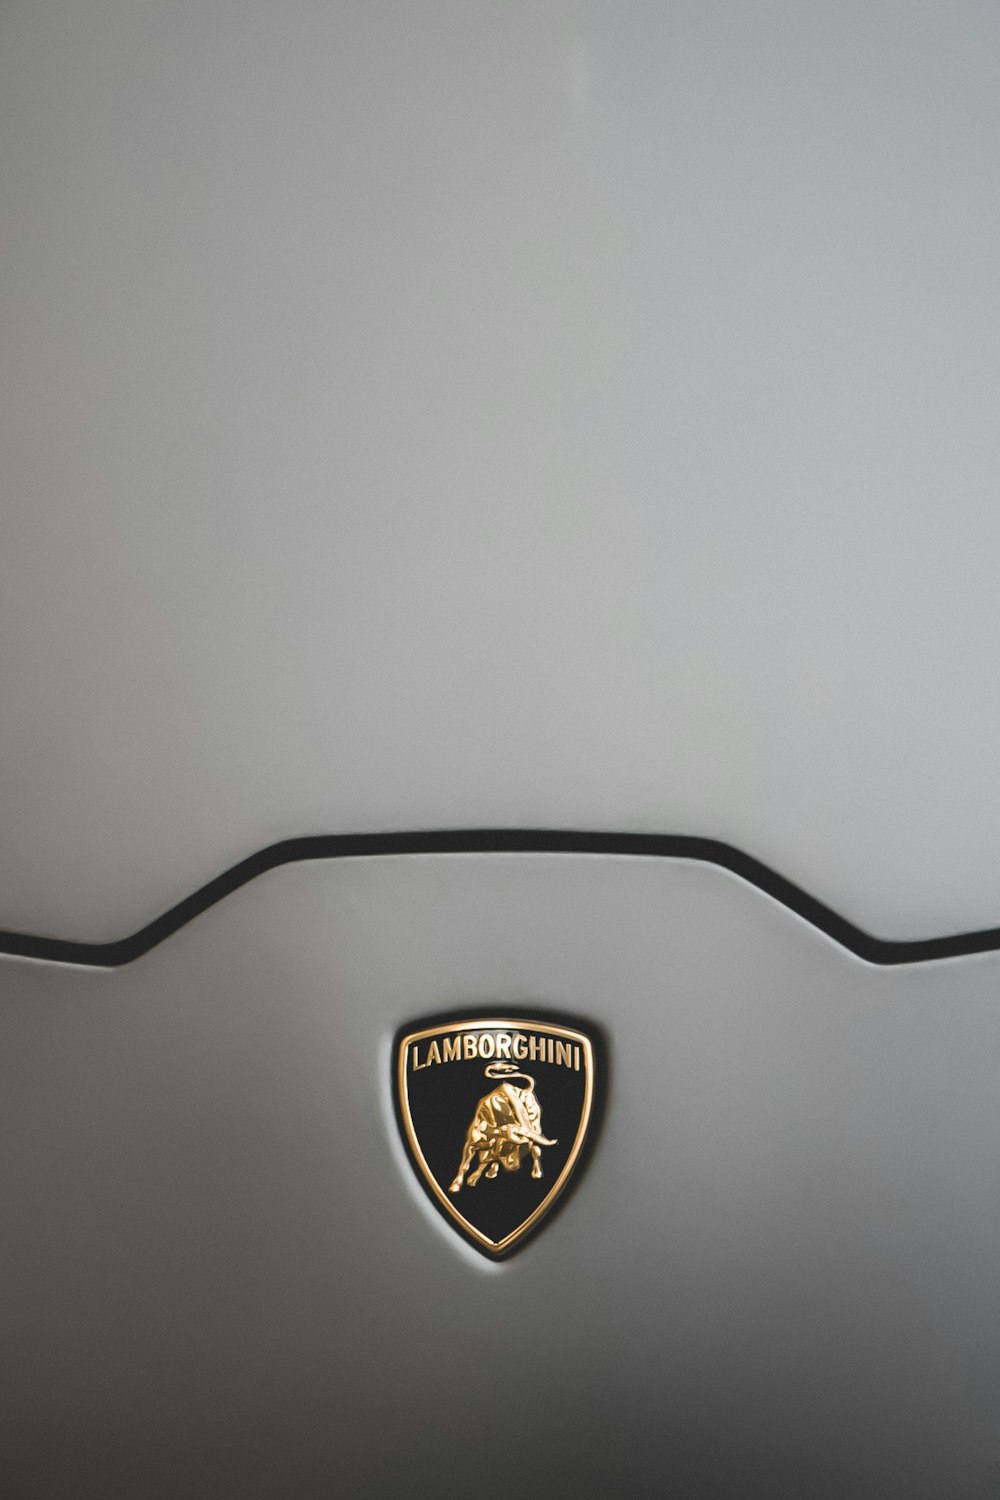 Emblema de Lamborghini